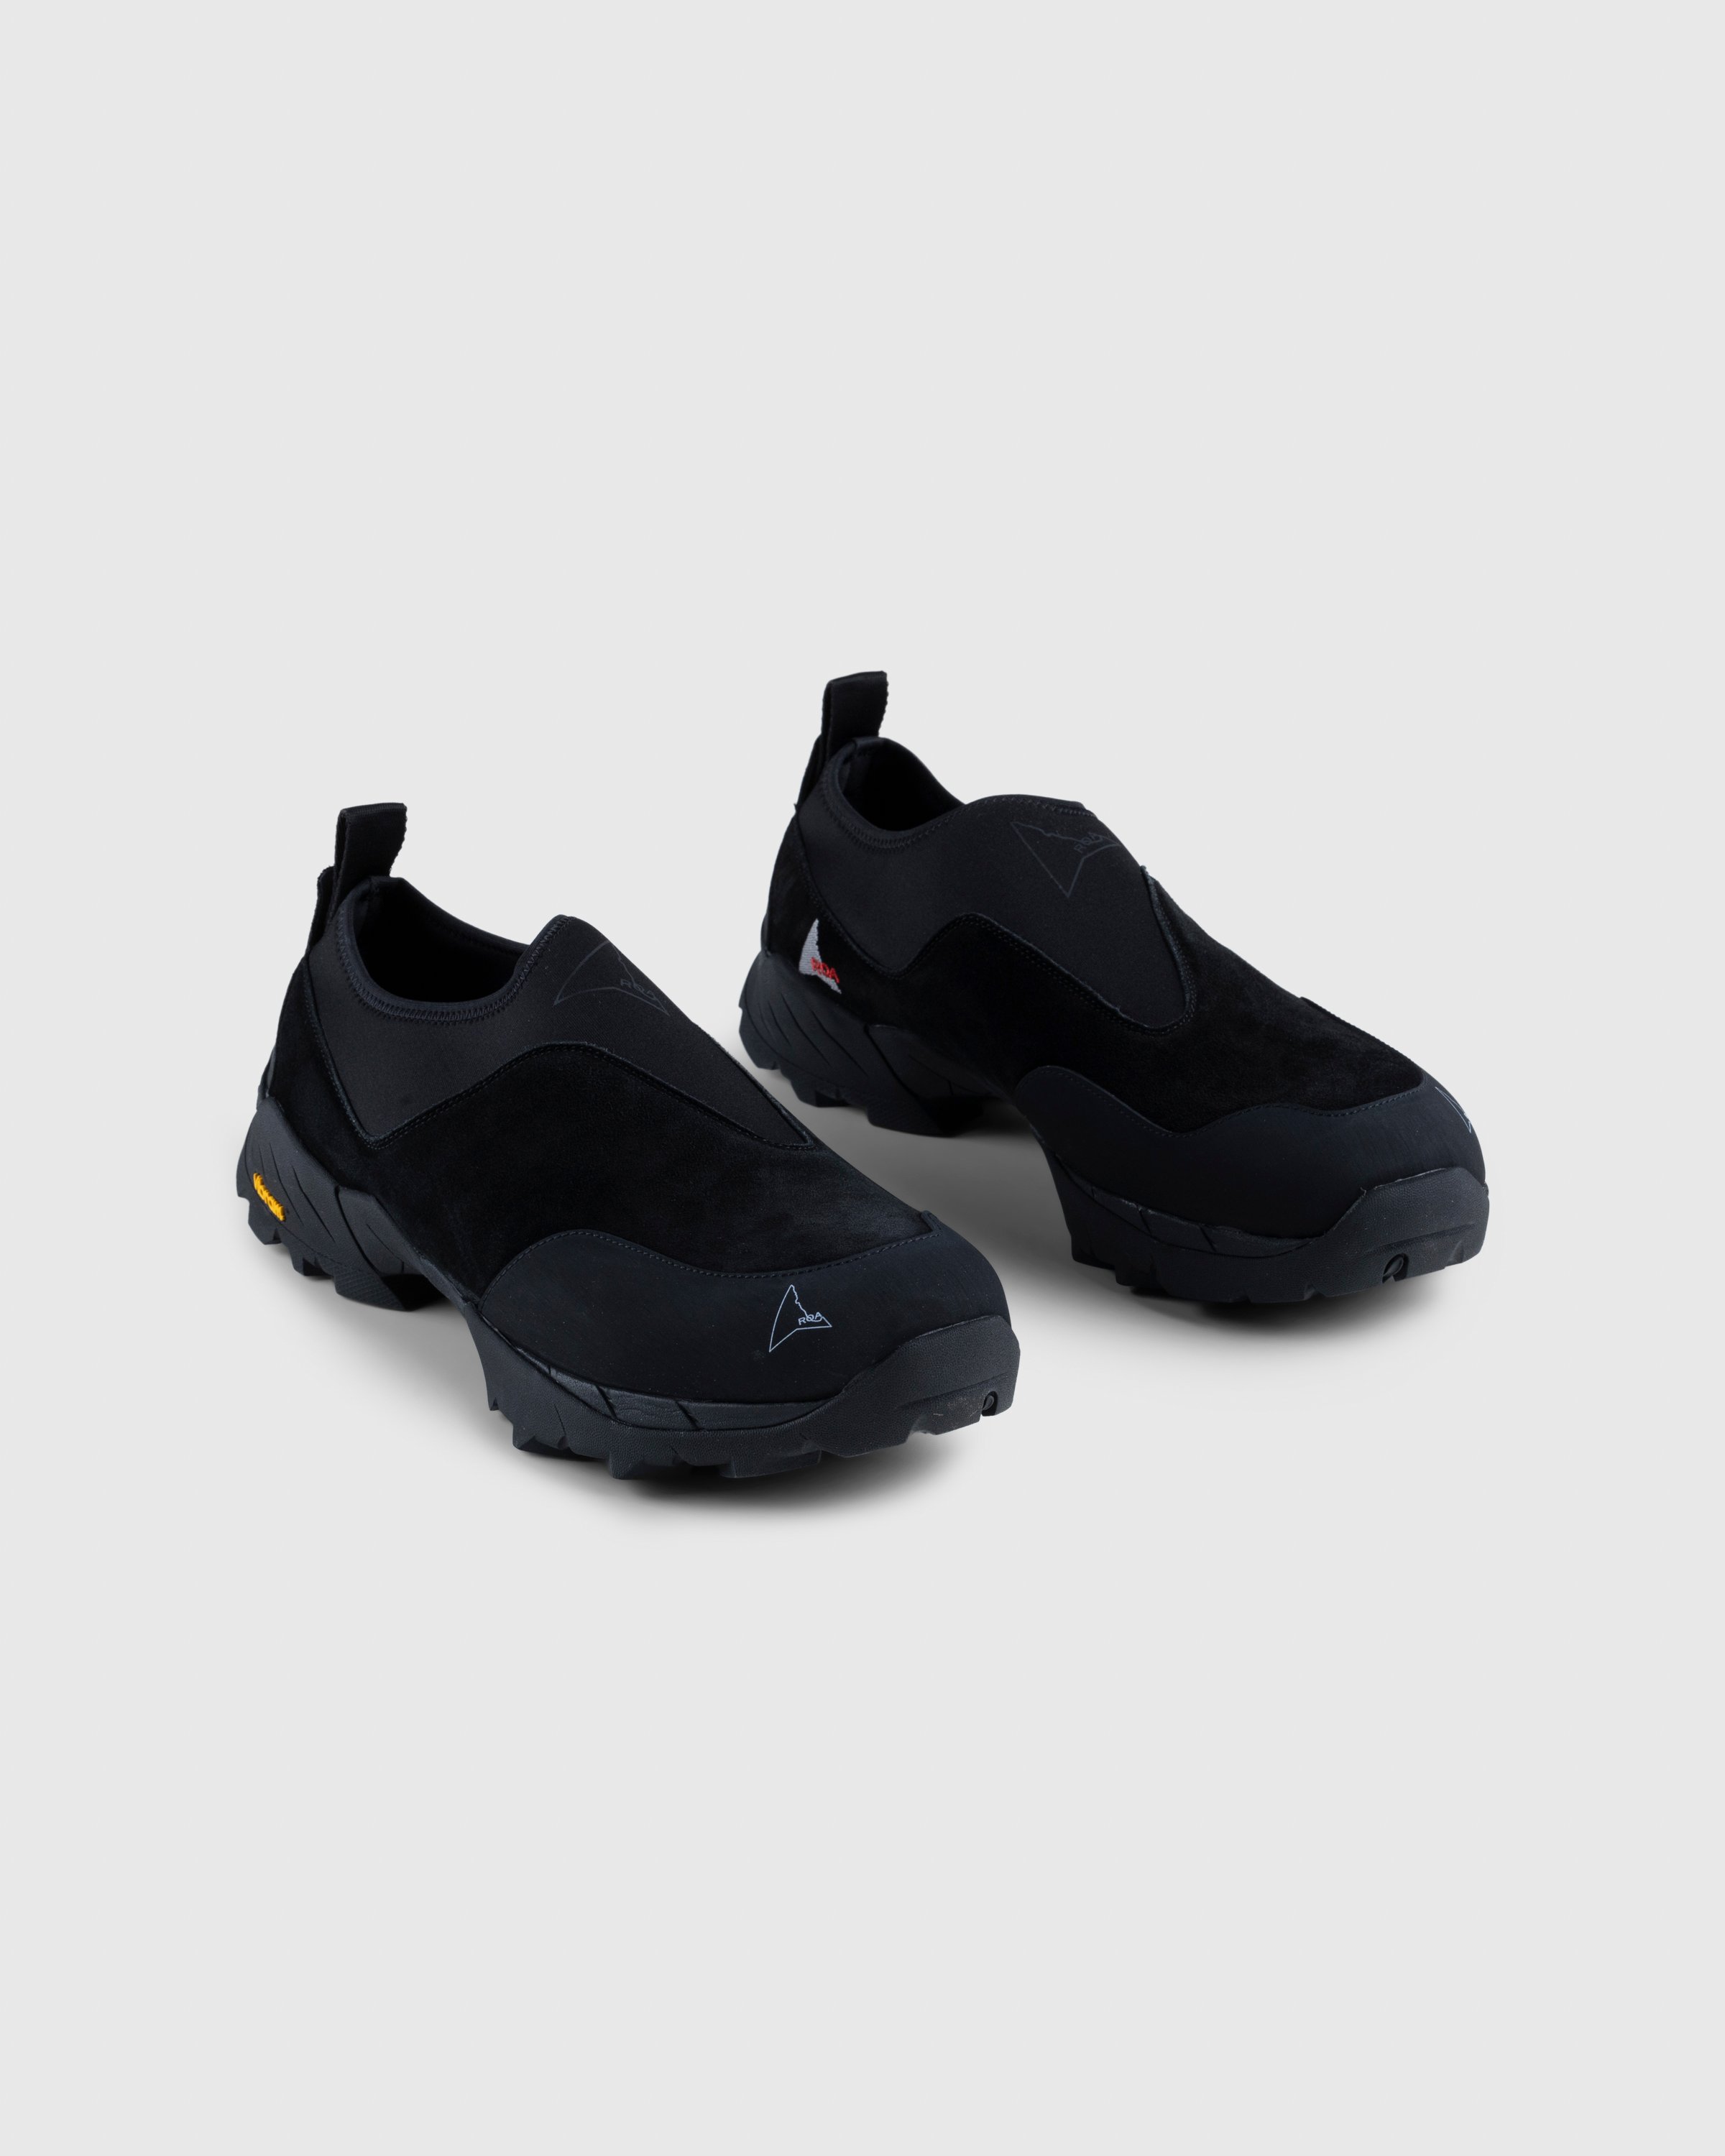 ROA - Slip On Sneaker Black - Footwear - Black - Image 3